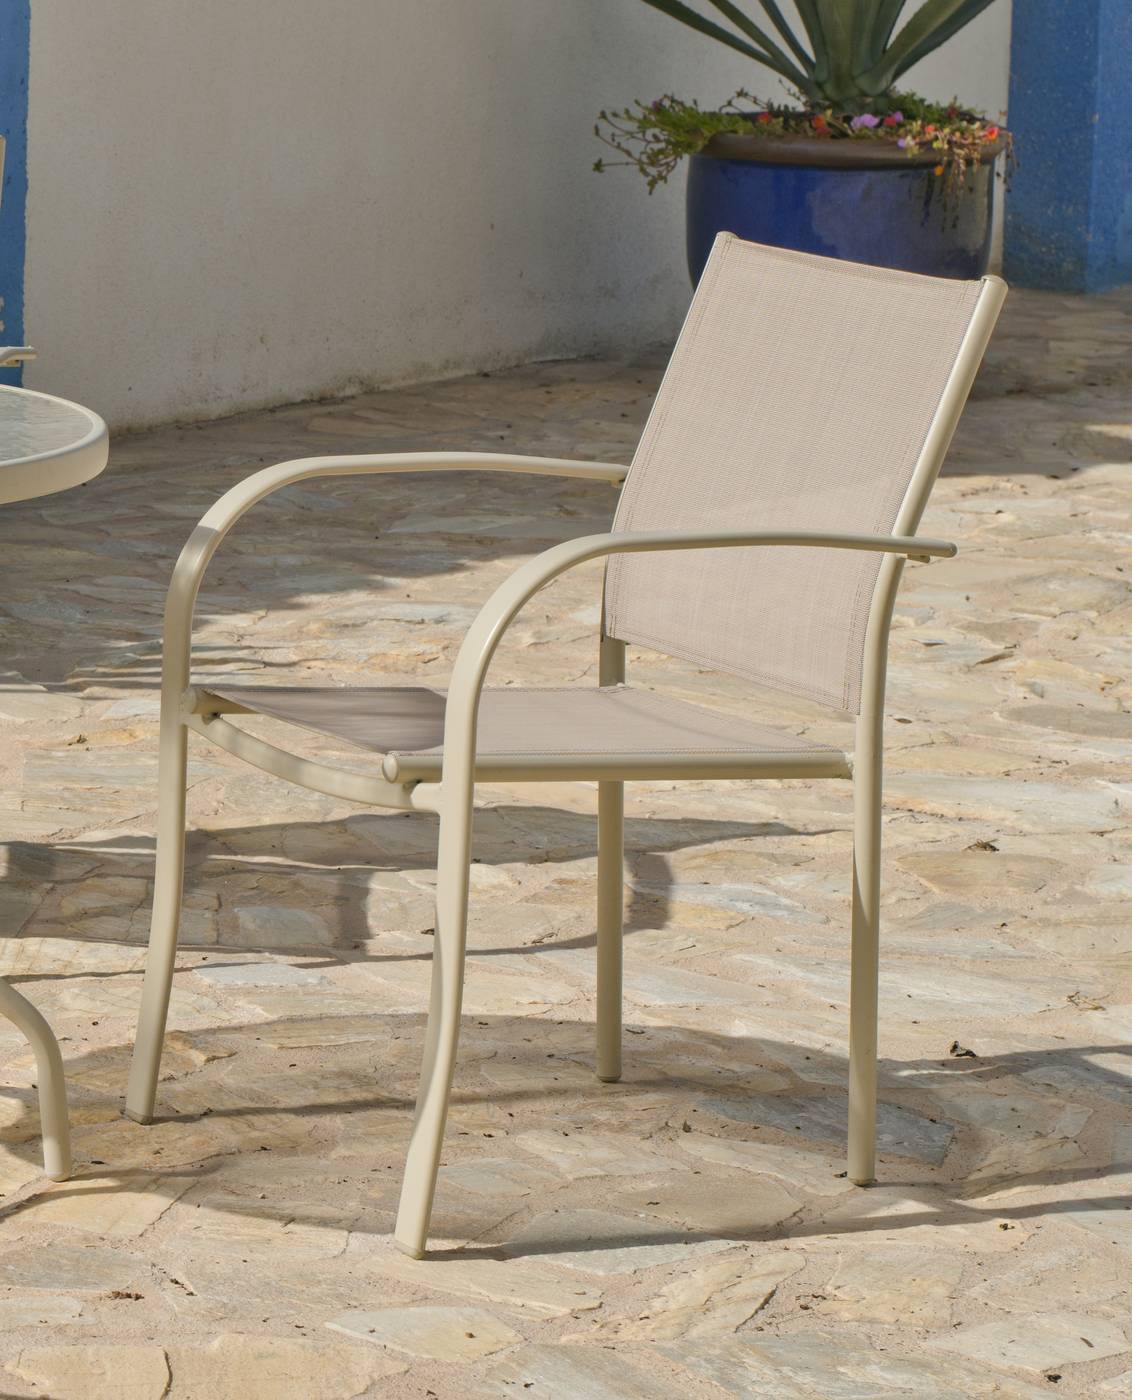 Conjunto Acero Castilla 90-4 - Conjunto de acero color champagne: mesa redonda de 90 cm, con tablero de cristal templado + 4 sillones de acero y textilen